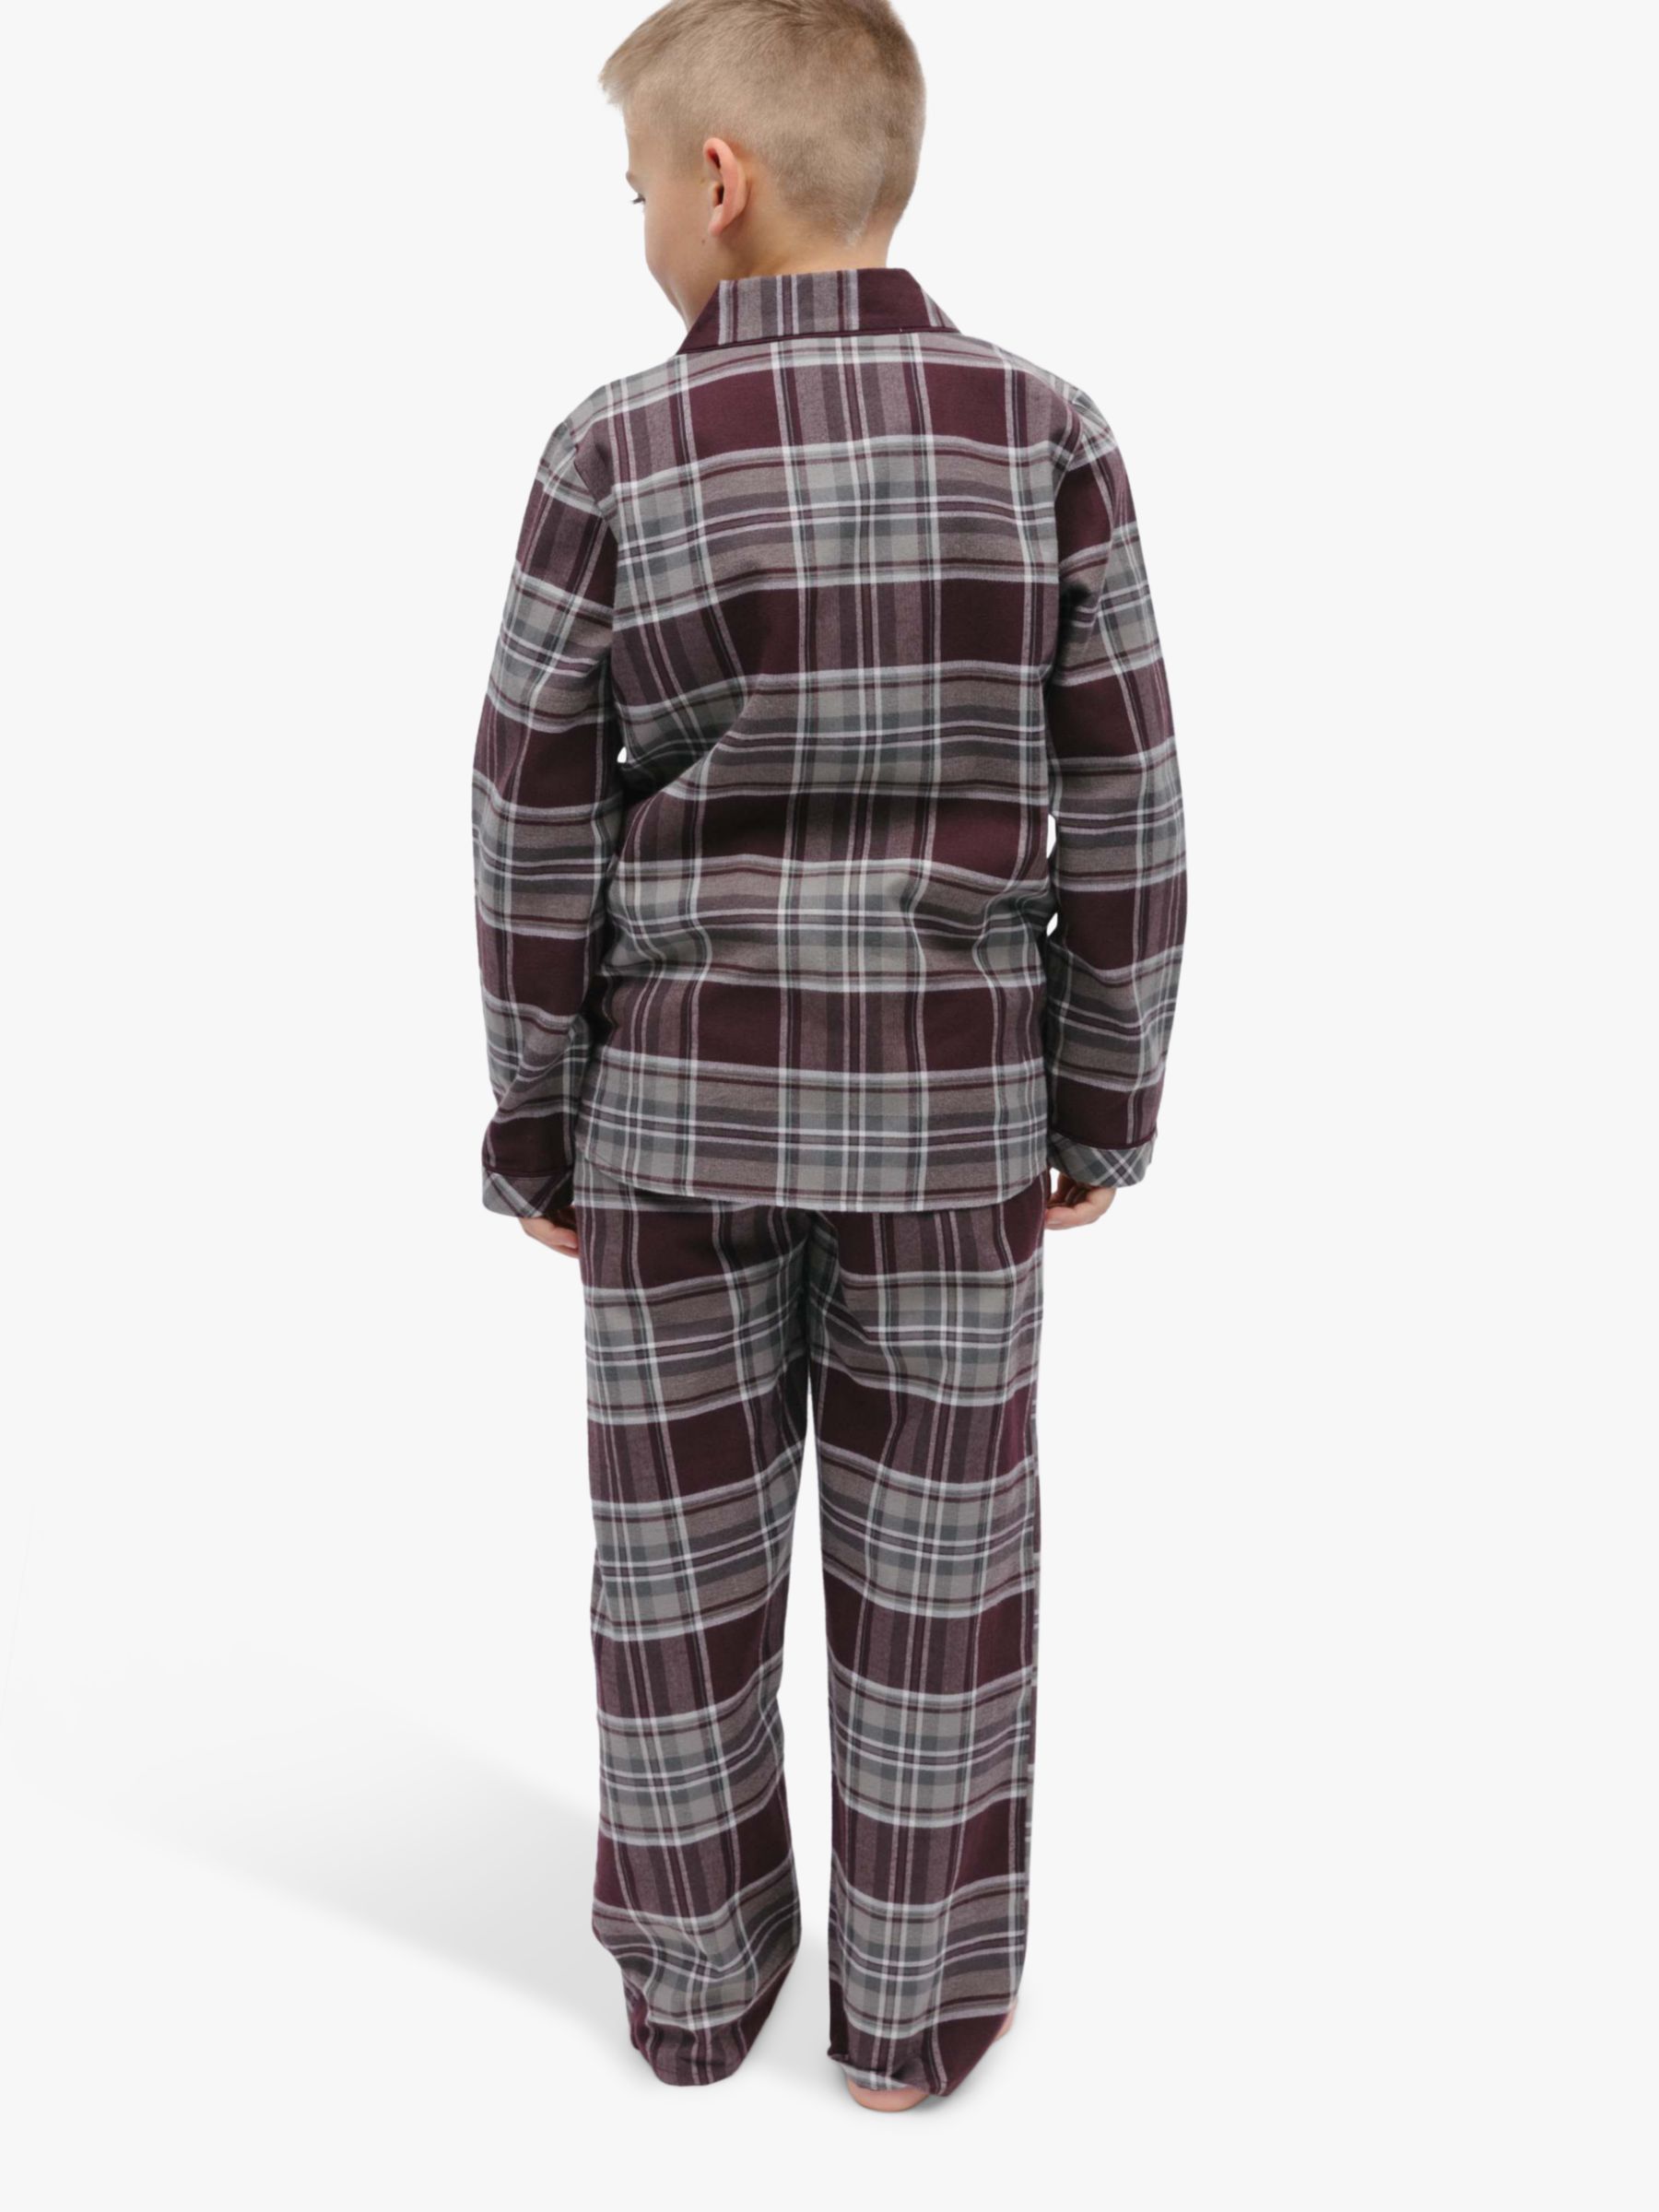 Minijammies Kids' Spencer Check Long Sleeve Pyjamas, Burgundy, 2-3 years